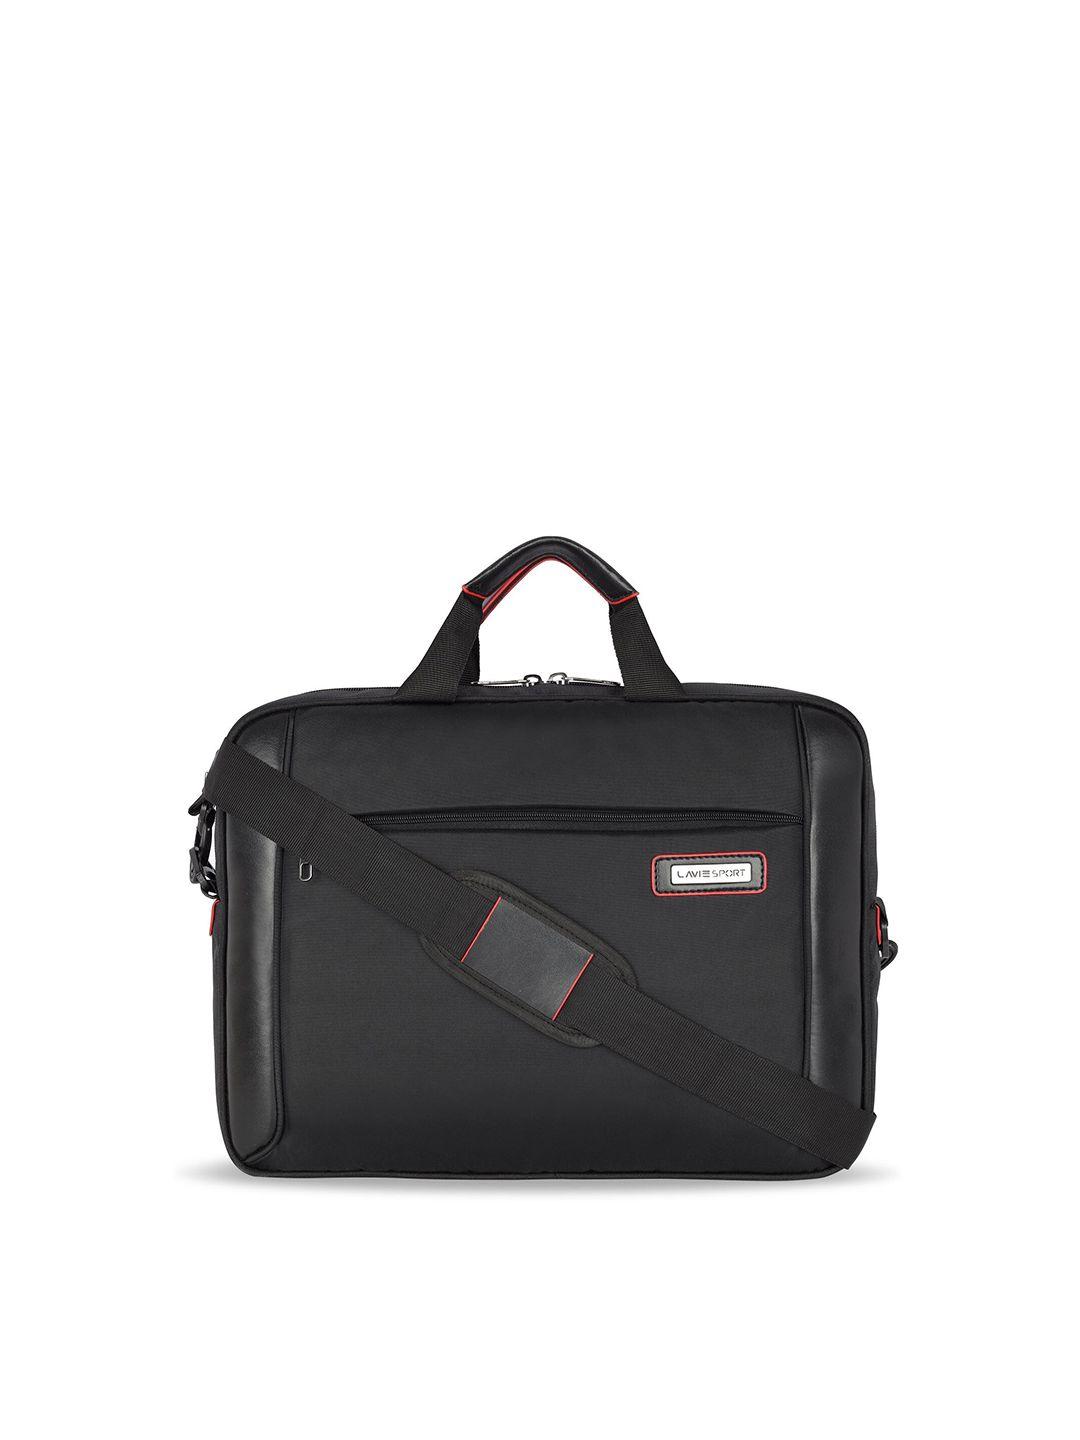 lavie sport laptop briefcase bag